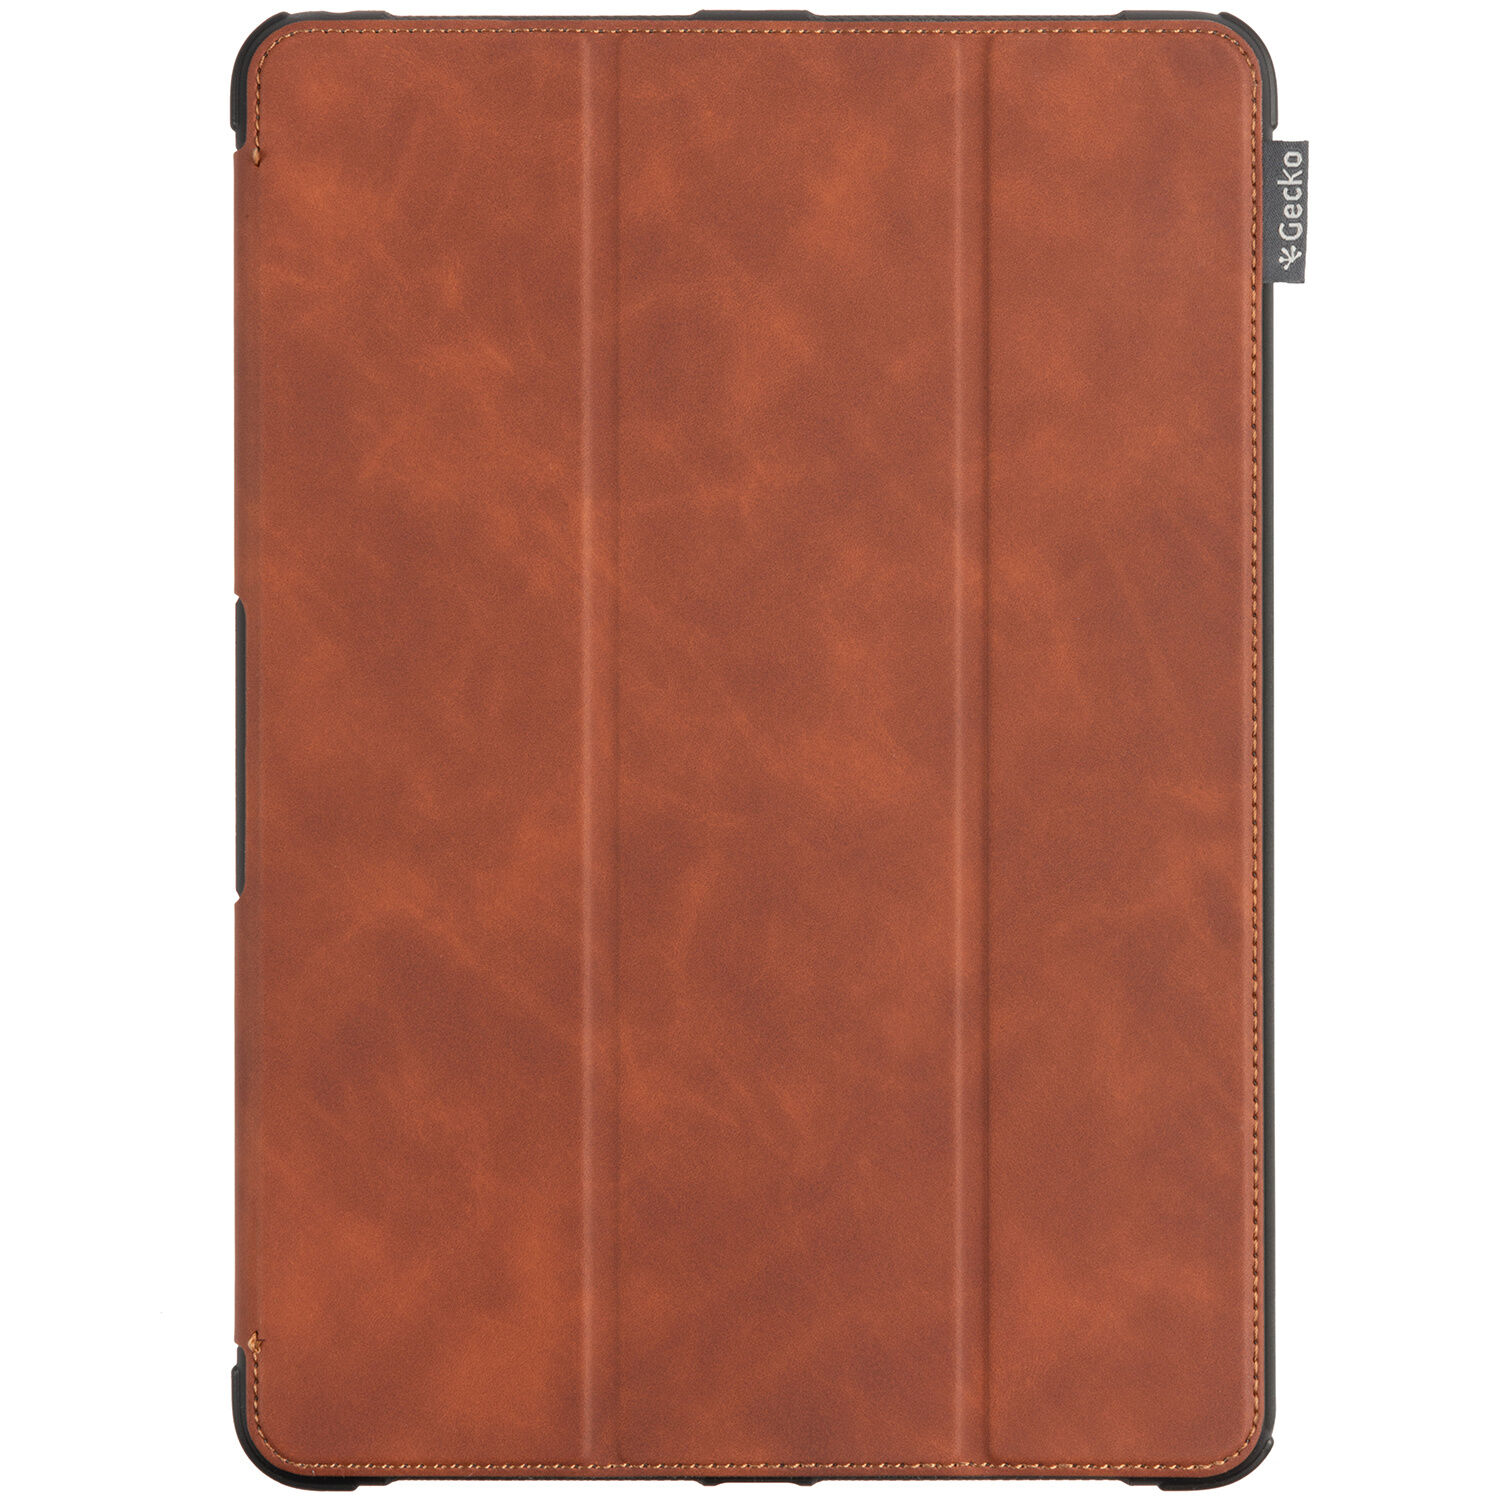 Gecko Covers Etui tablette à rabat Rugged pour l'iPad 10.2 (2019 / 2020) - Brun